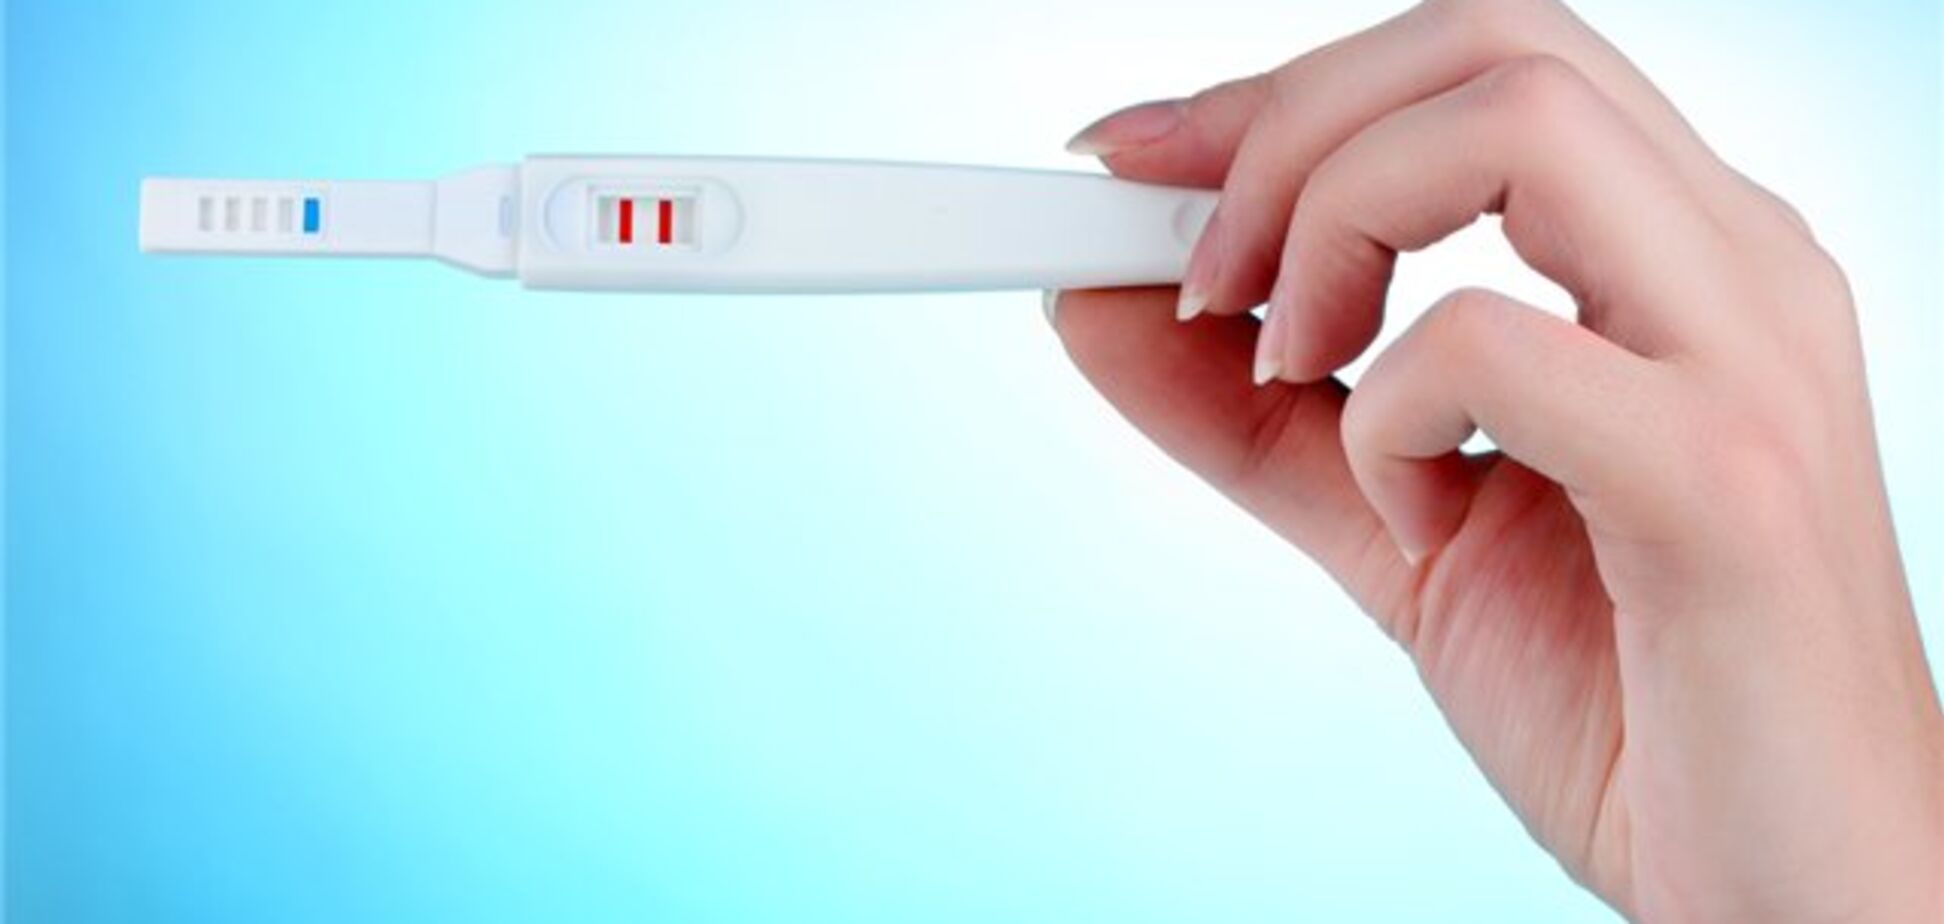 Как работает тест на беременность: опубликовано детальное видео 